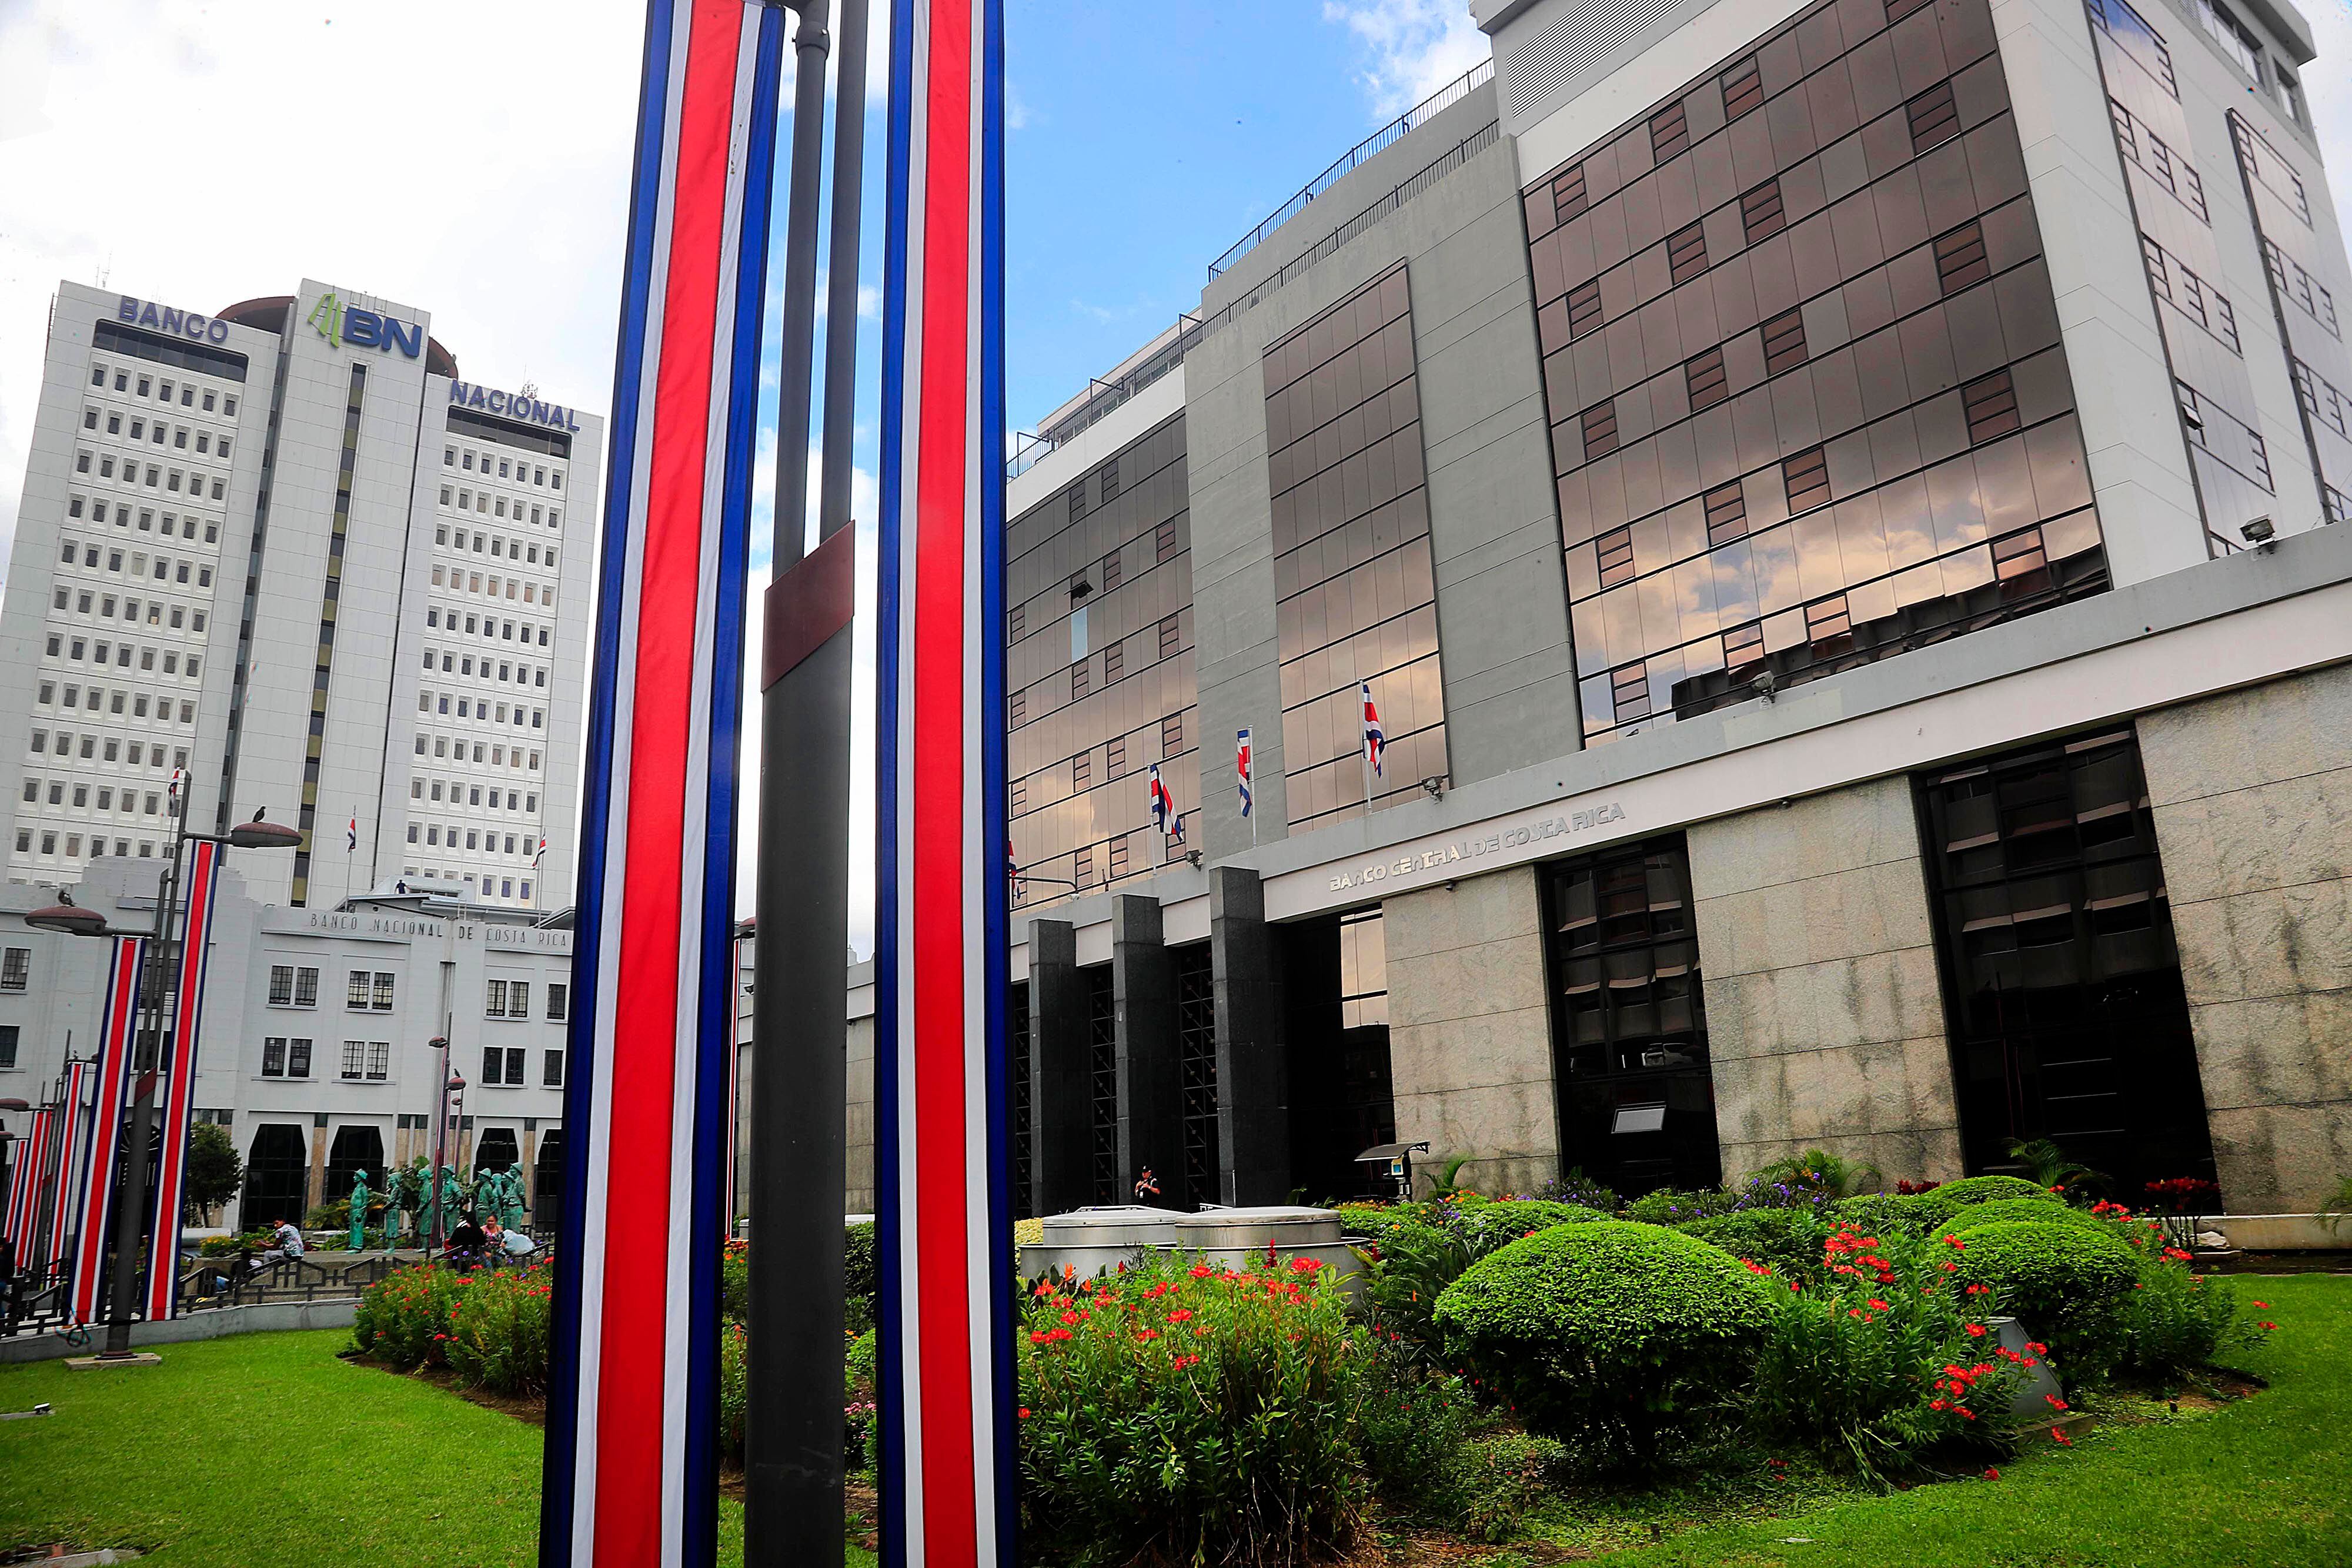 El Banco Central denunció penalmente a Bernardo Alfaro, gerente del Banco Nacional, por no entregar información sin anonimizar del saldo de ahorrantes y depositantes de la institución bancaria.